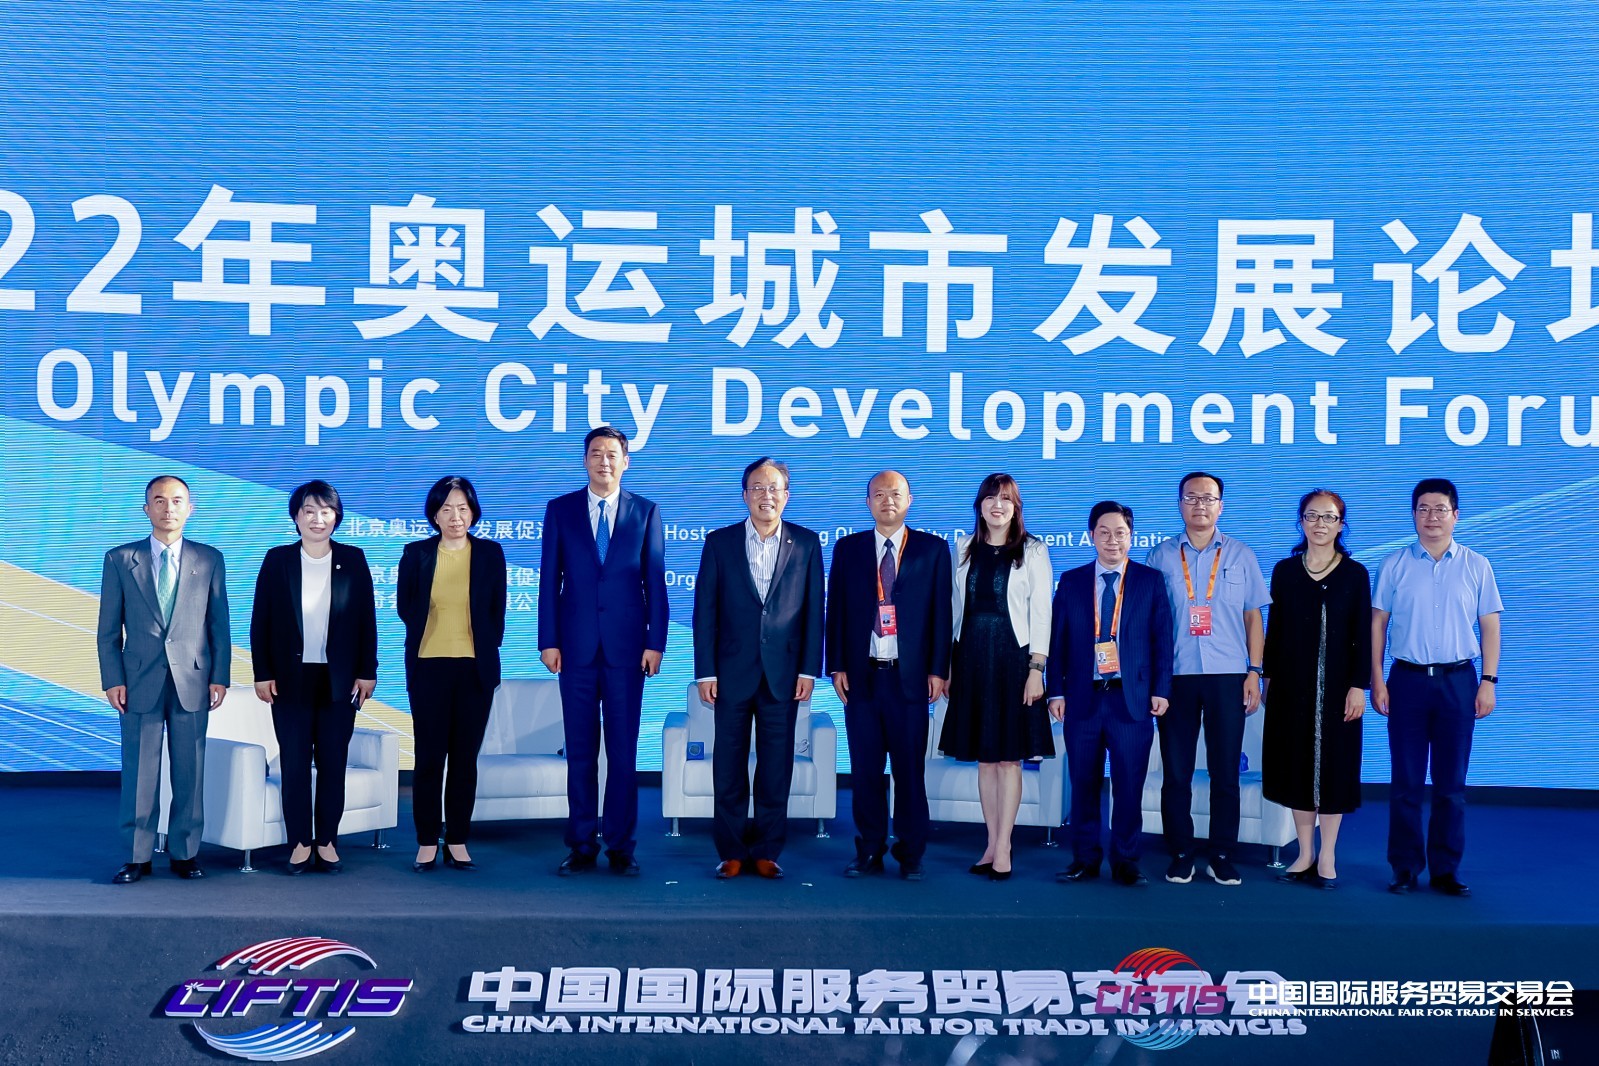 2022年奧運城市發展論壇在首鋼舉行